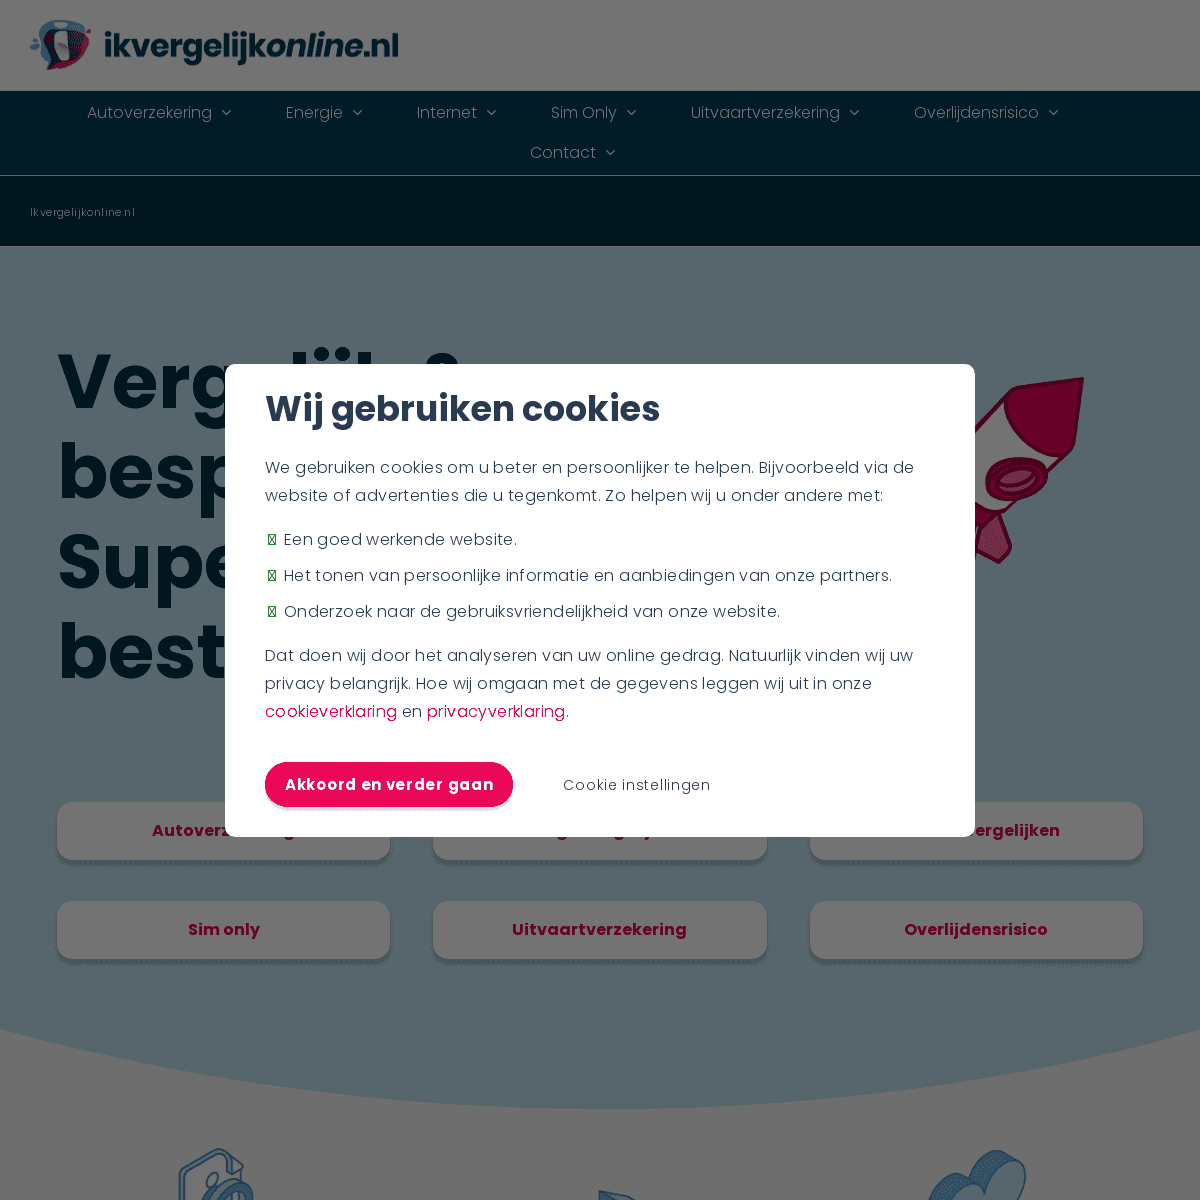 A complete backup of https://ikvergelijkonline.nl